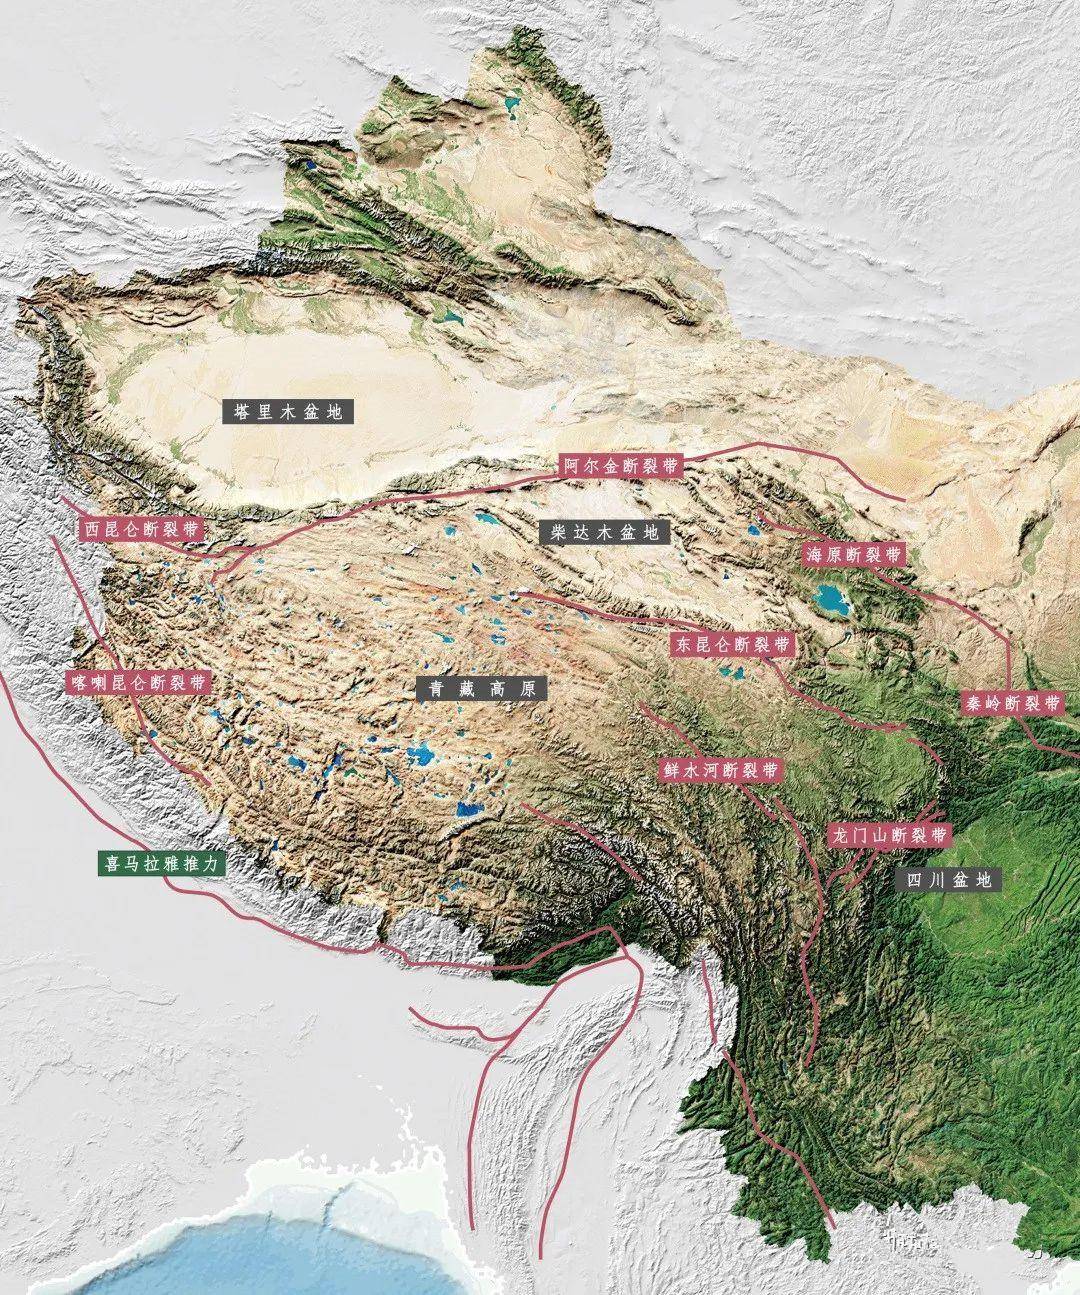 喜马拉雅山脉:不只是中国与印度之间的天然屏障,更是南亚水塔